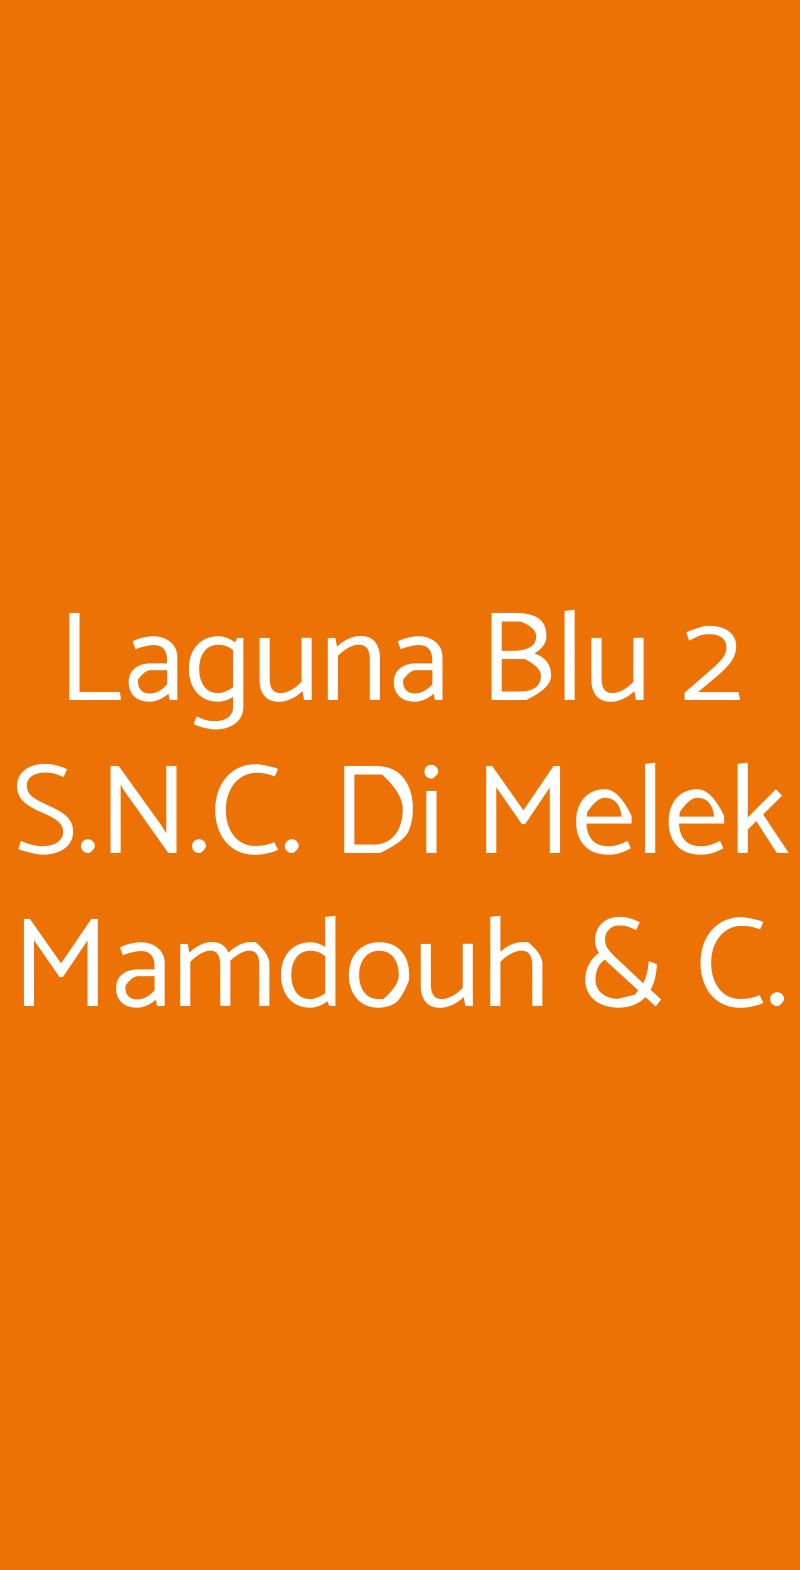 Laguna Blu 2 S.N.C. Di Melek Mamdouh & C. Milano menù 1 pagina